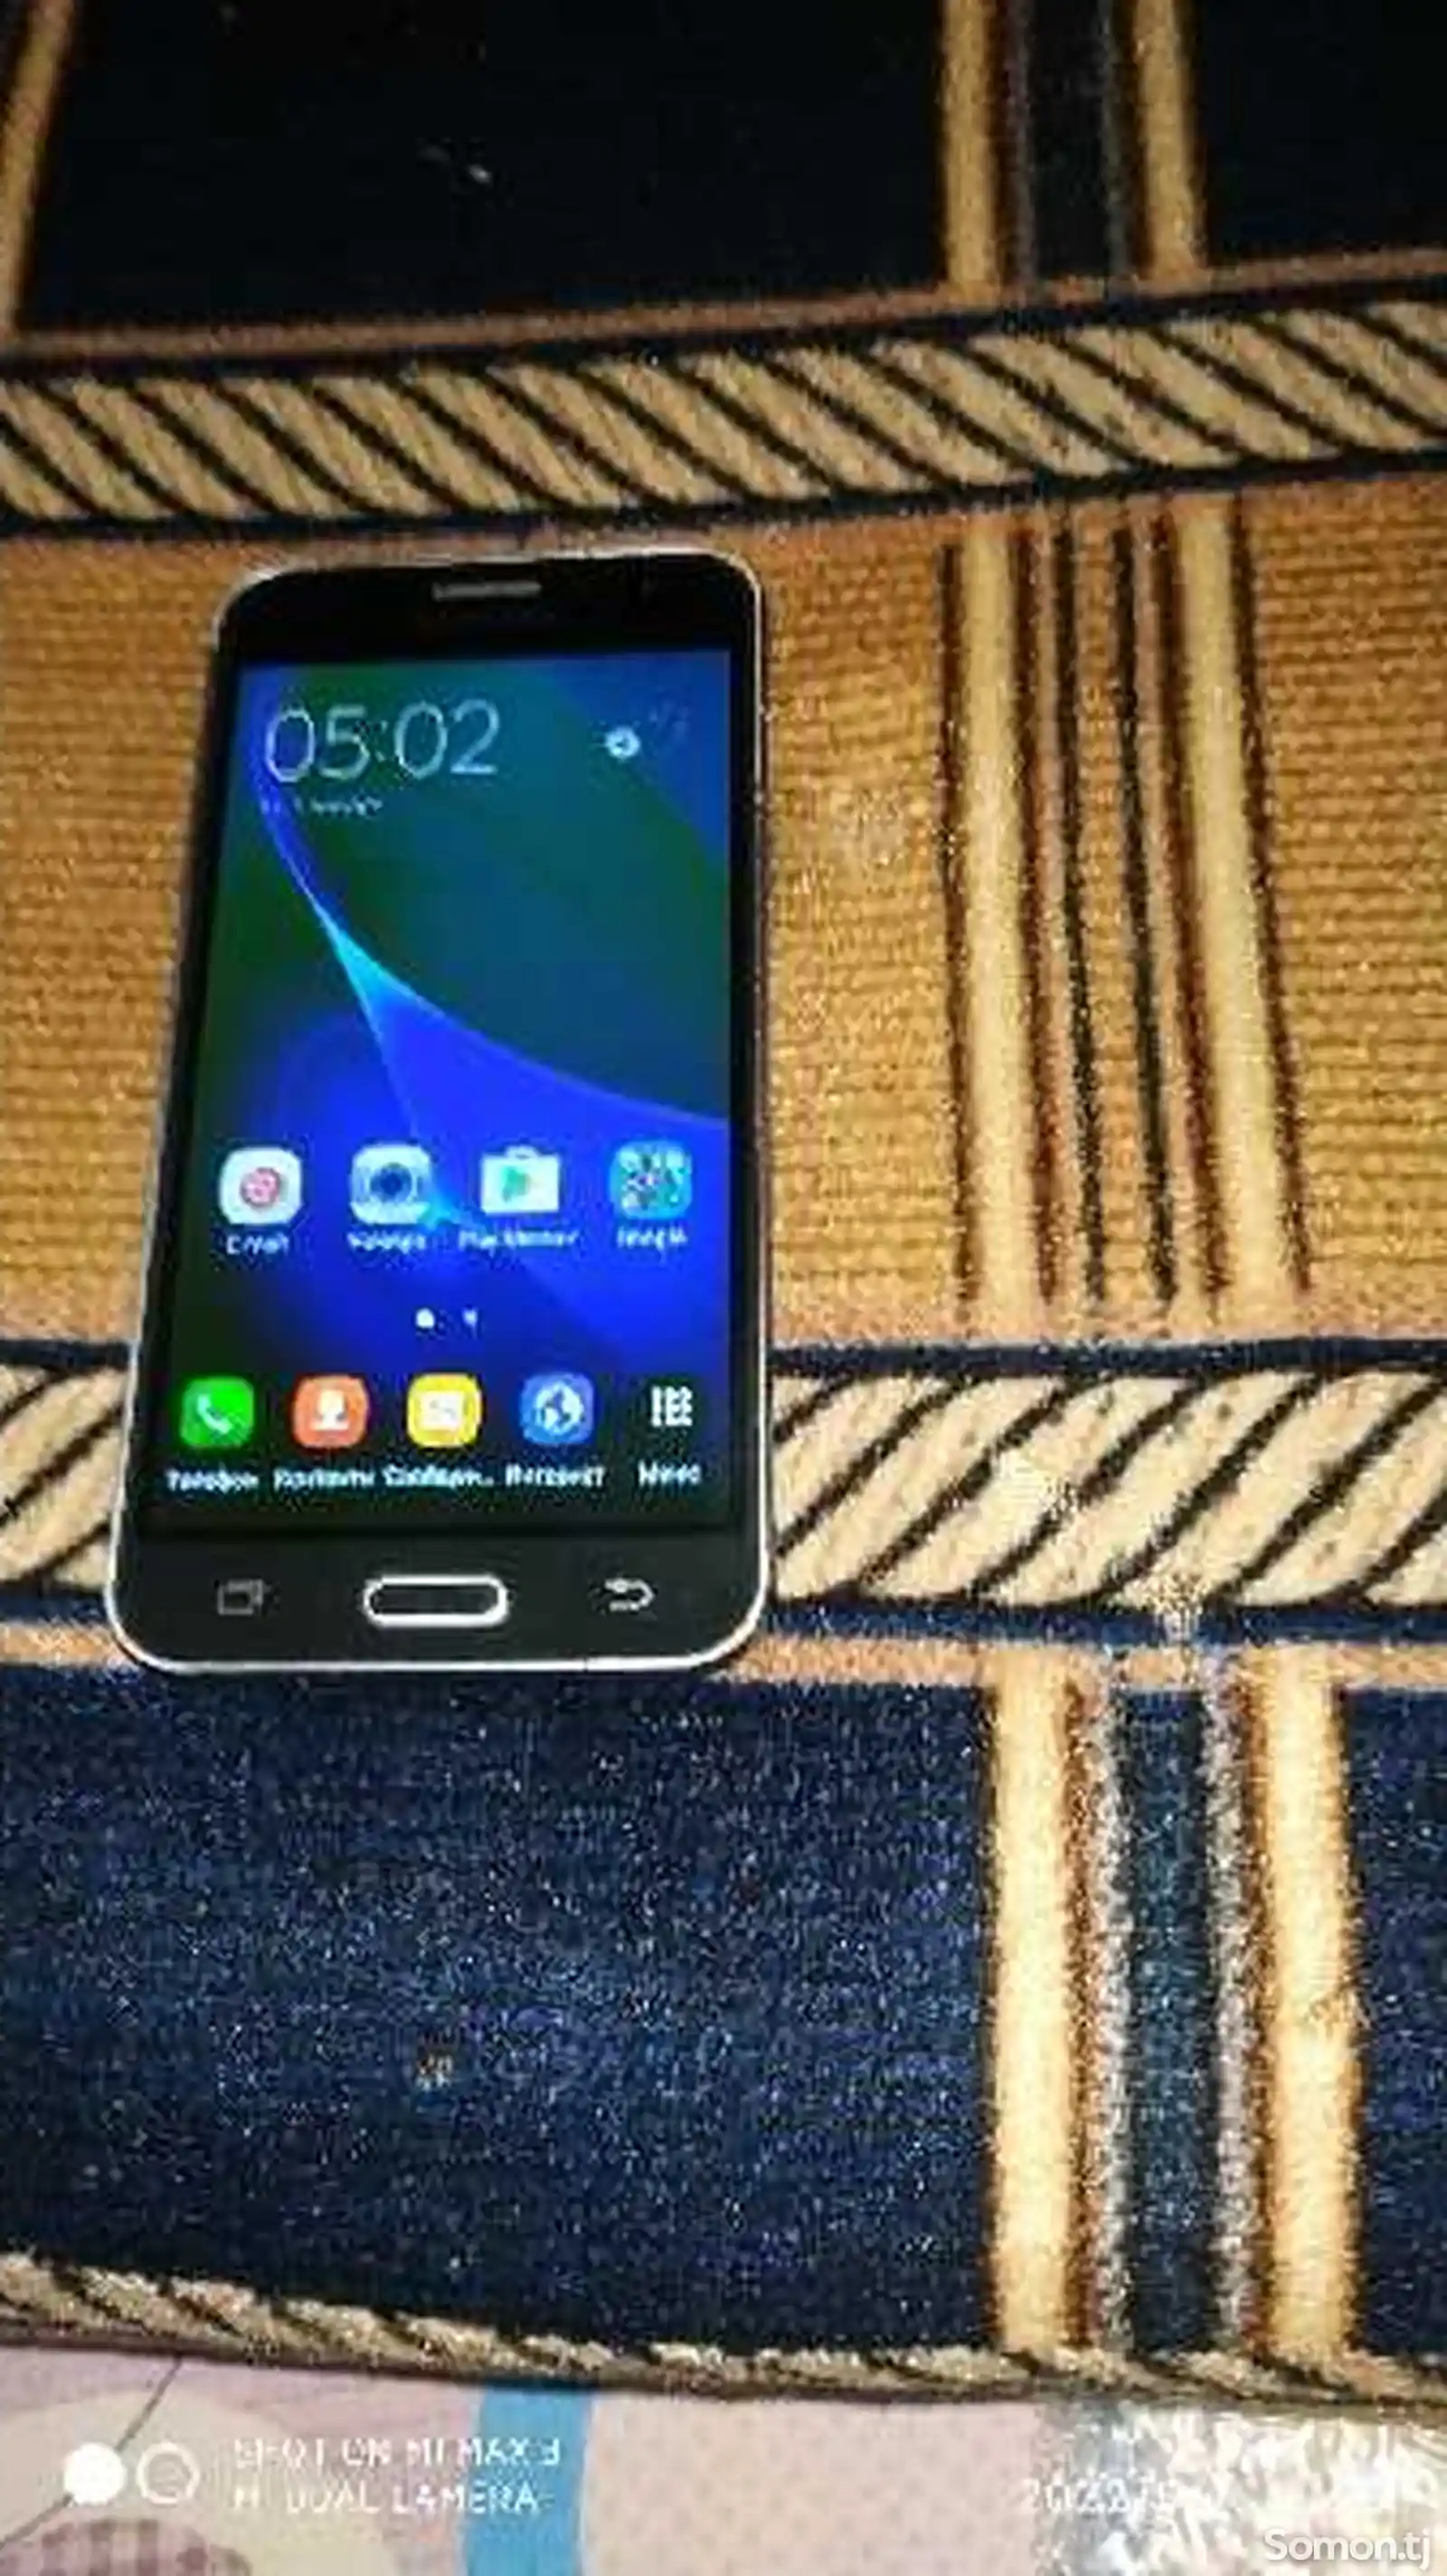 Samsung Galaxy j3 8gb-3